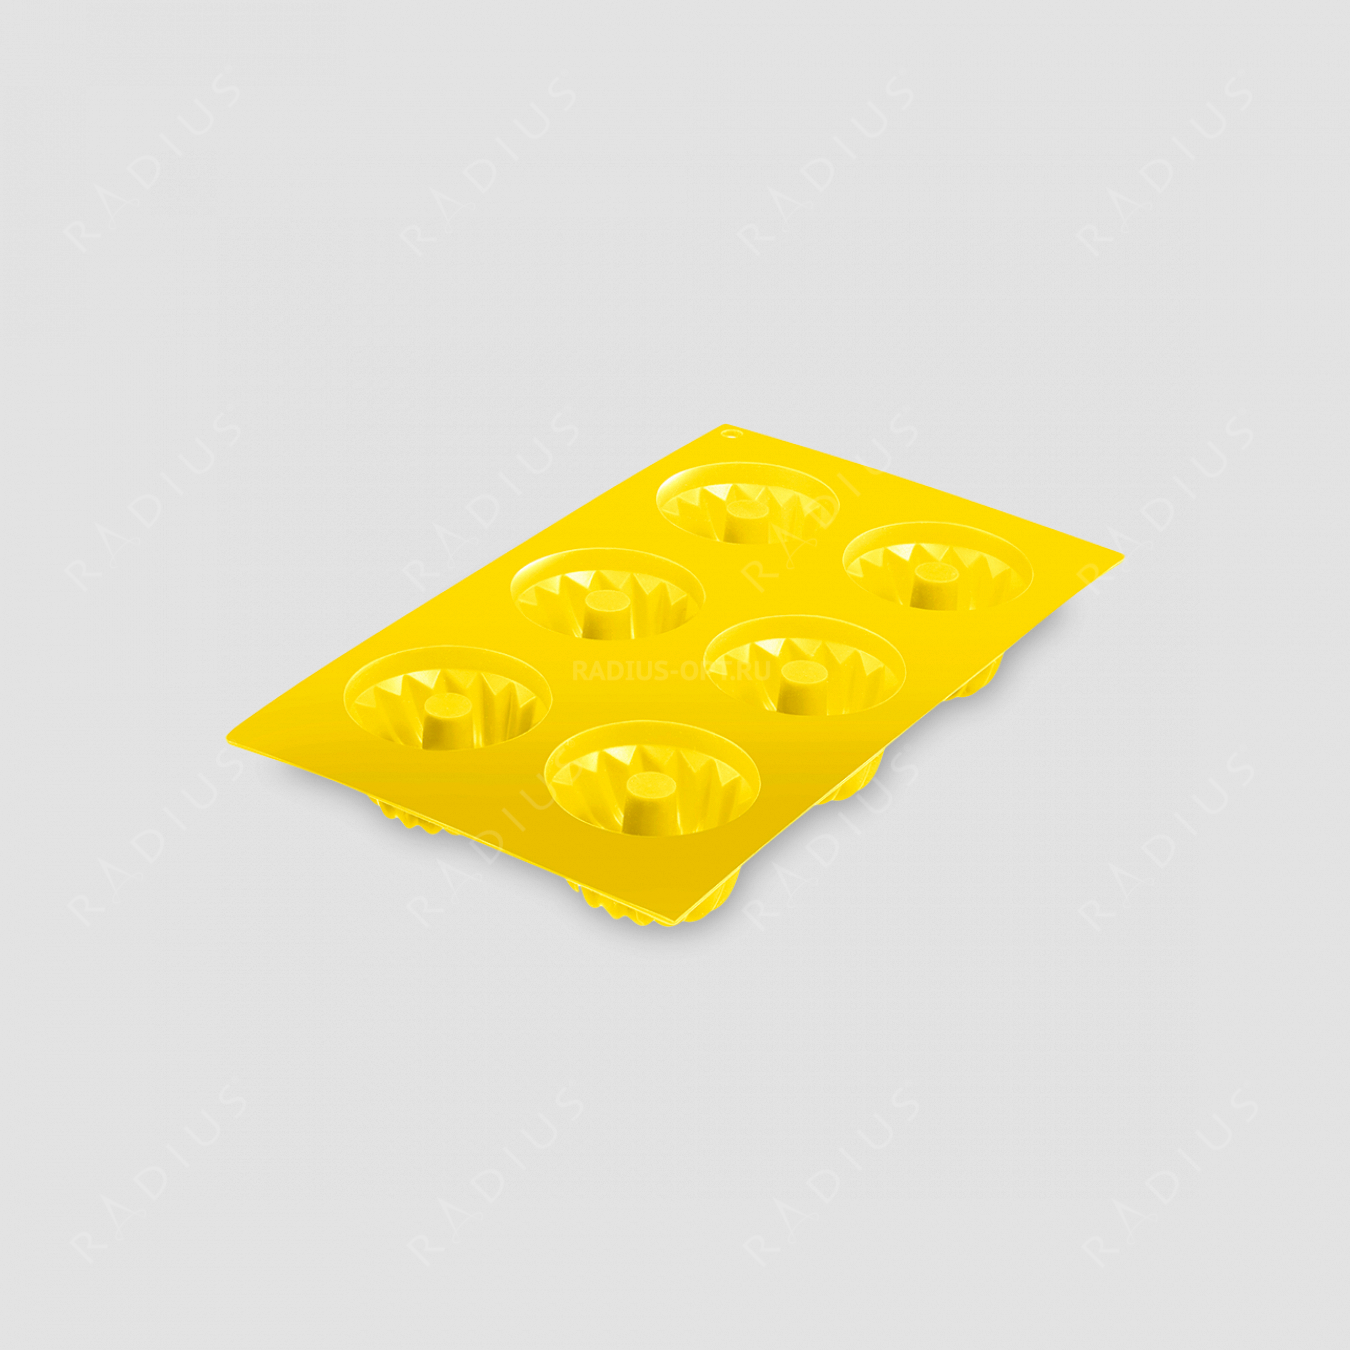 Форма для 6-ти маффинов, силикон, цвет-желтый, серия Silicone, Westmark, Германия